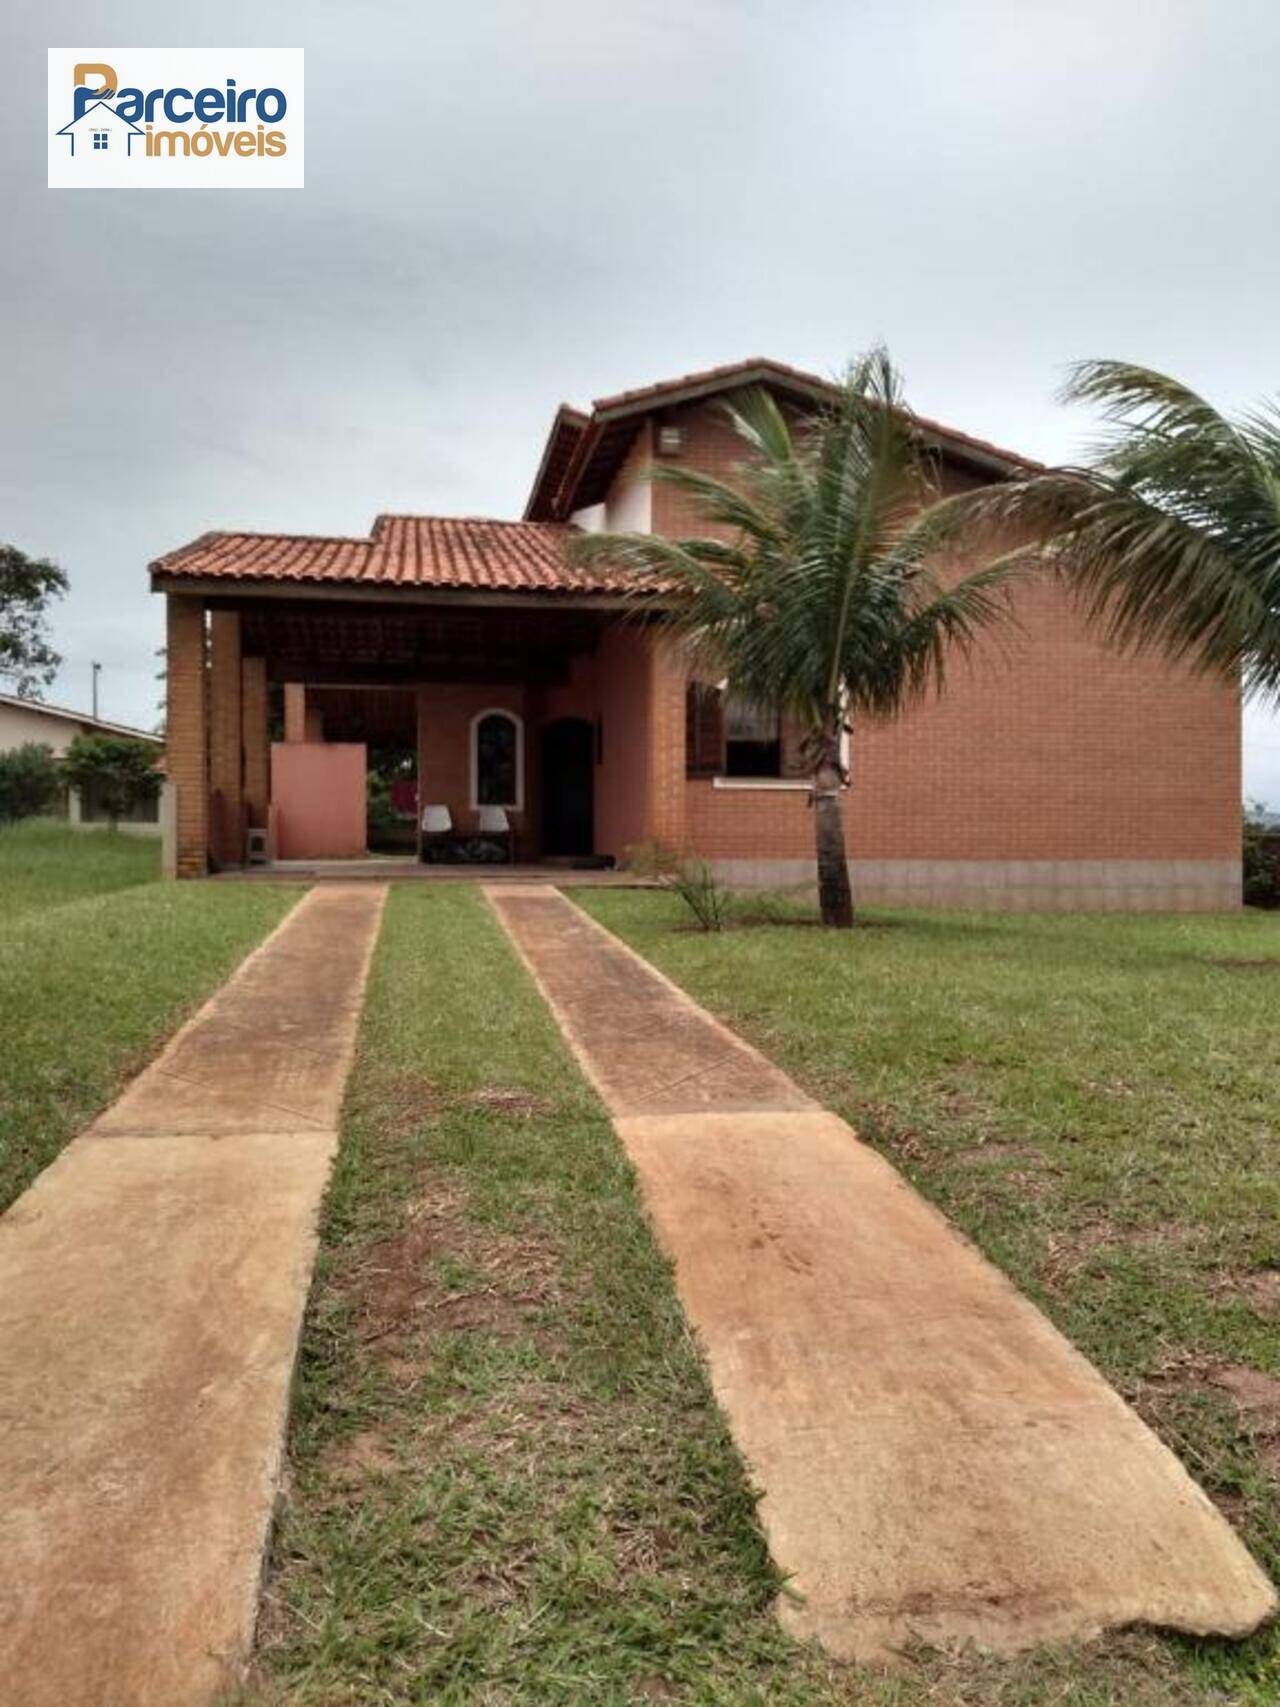 Casa Riviera de Santa Cristina, Arandu - SP